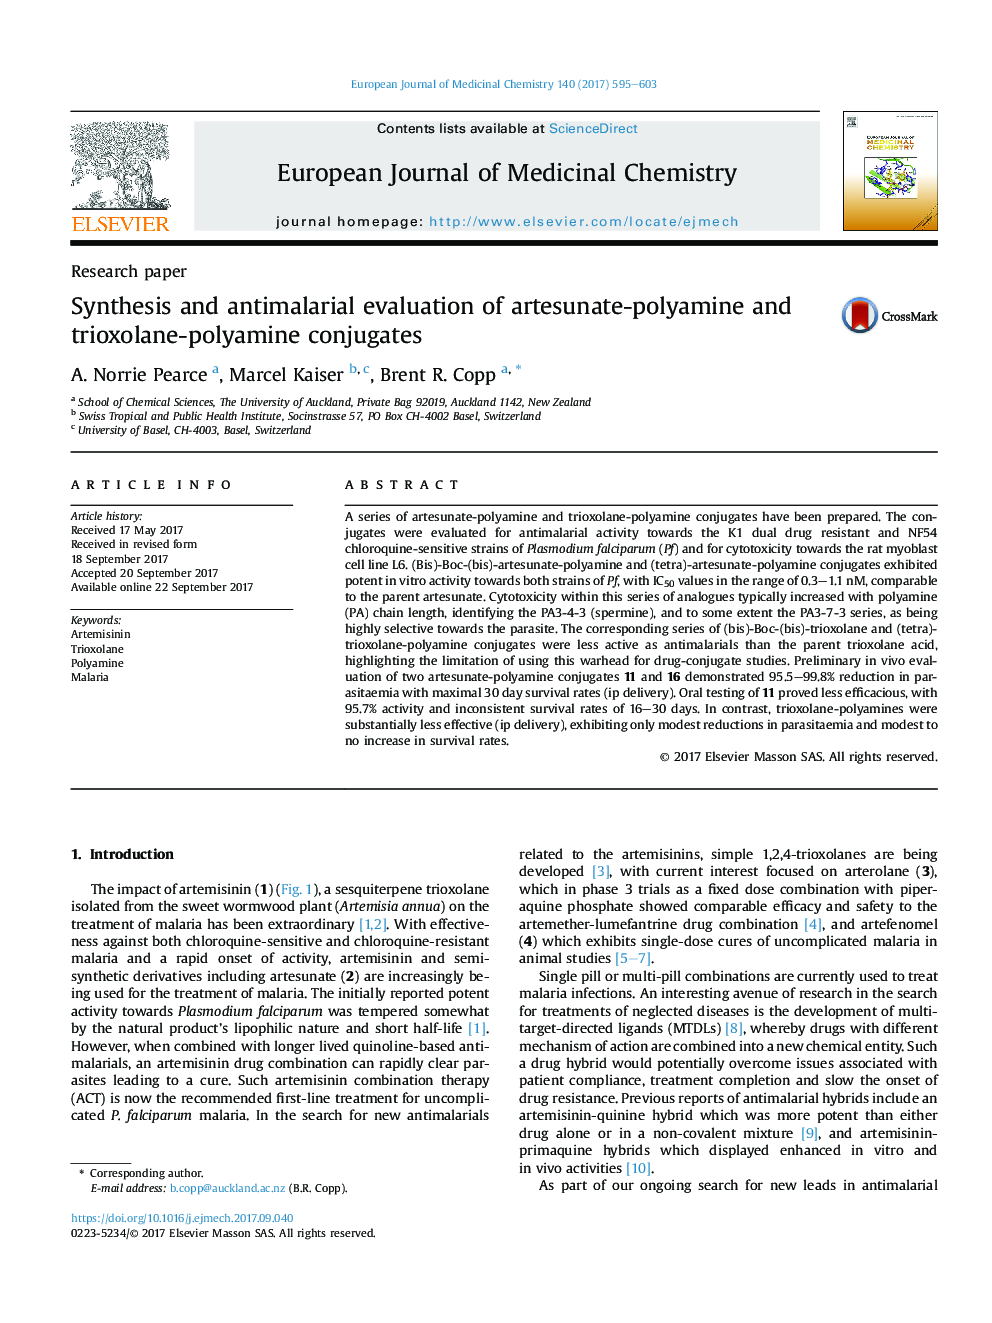 ارزیابی سنتز و ضد مالاریا از ترکیبات آرتسونات-پلیامین و تریکسلن-پلیآمین 